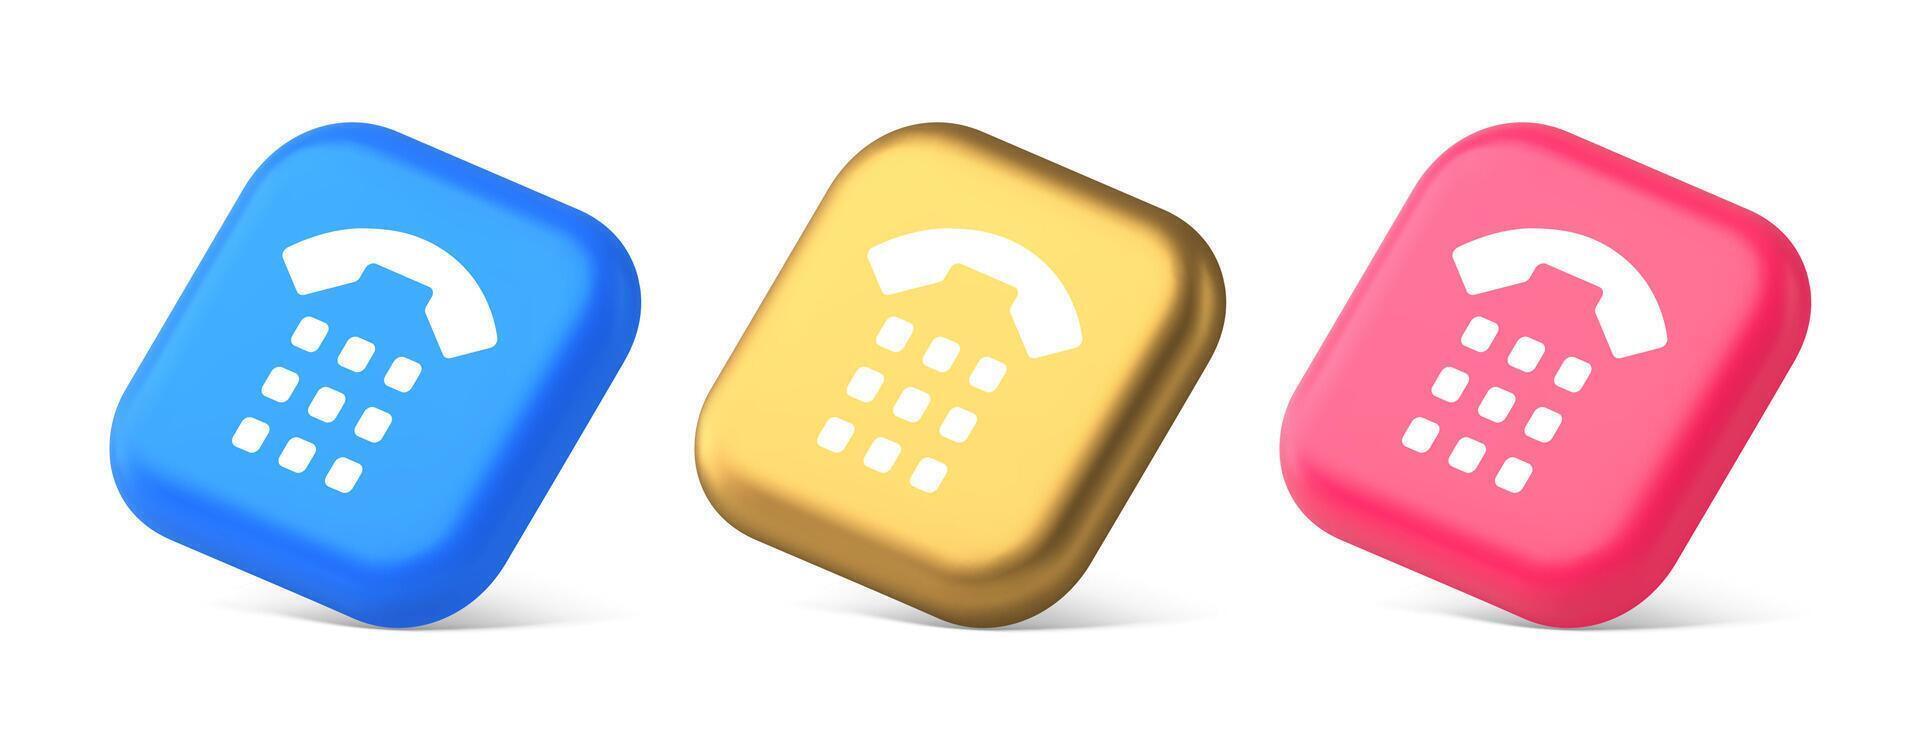 telefone ligar botão inscrição aparelho portátil Móvel contato comunicação 3d realista isométrico ícone vetor